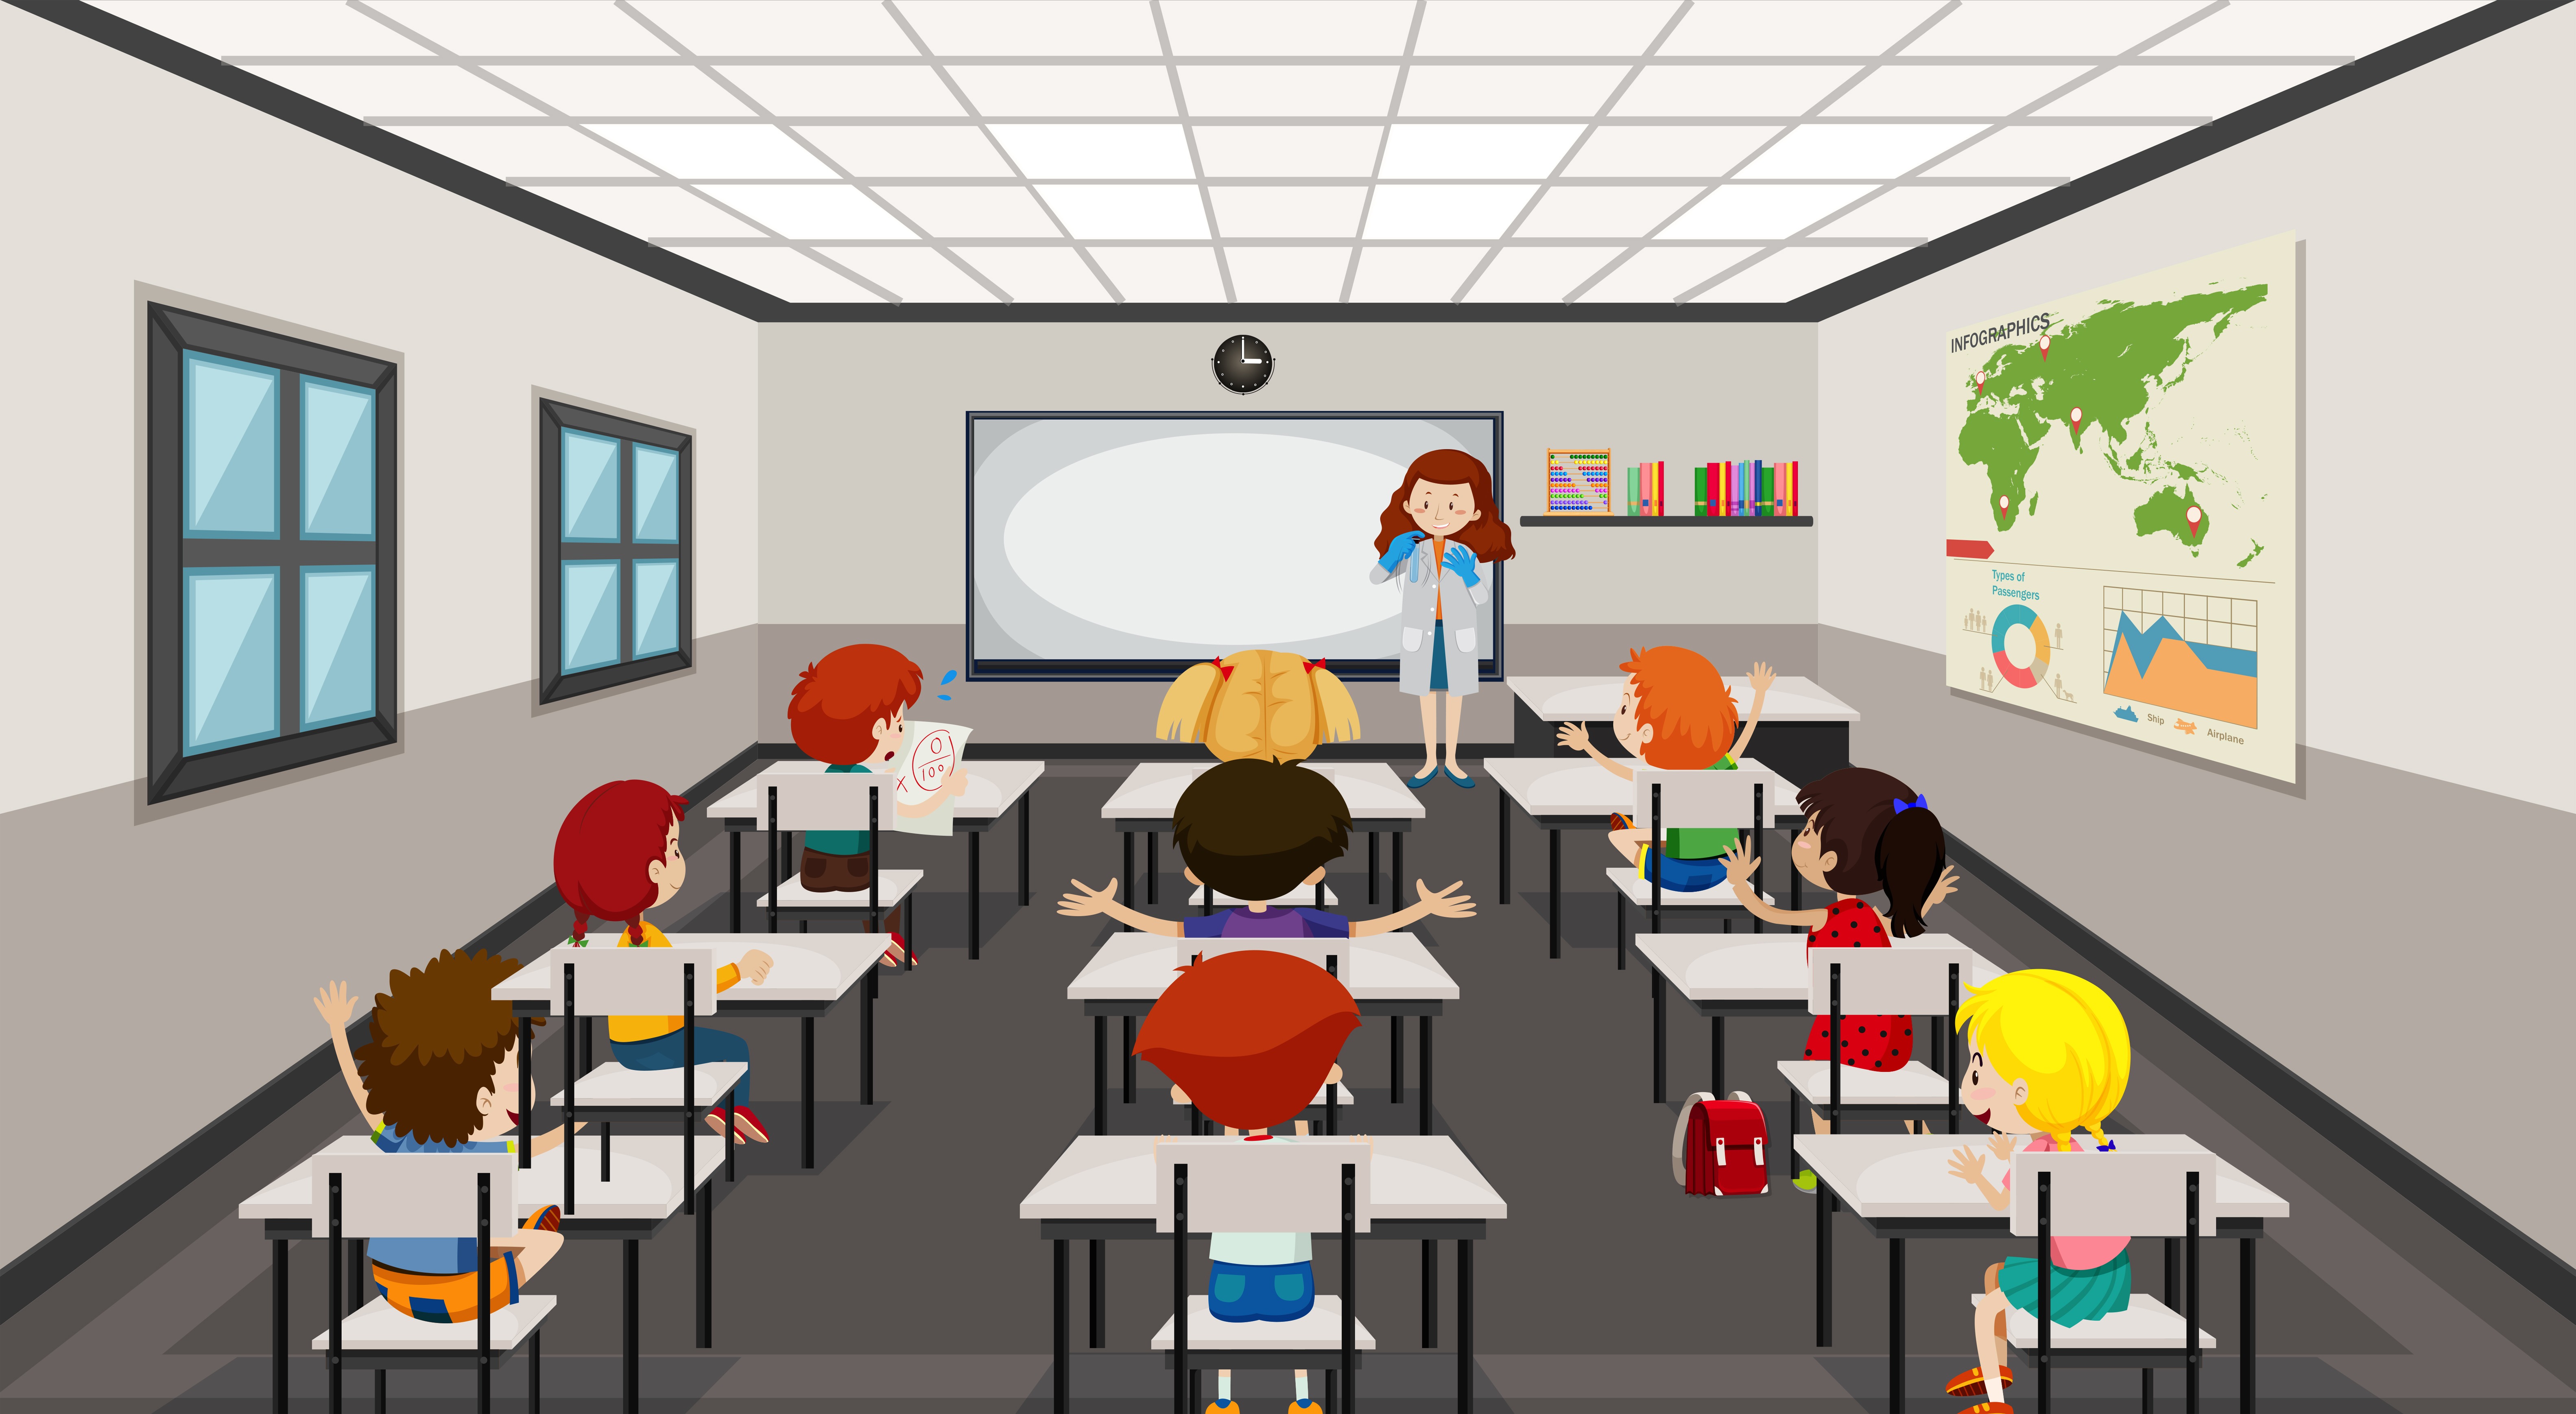 Inclusão na escola: os professores estão preparados? - Portabilis | Blog